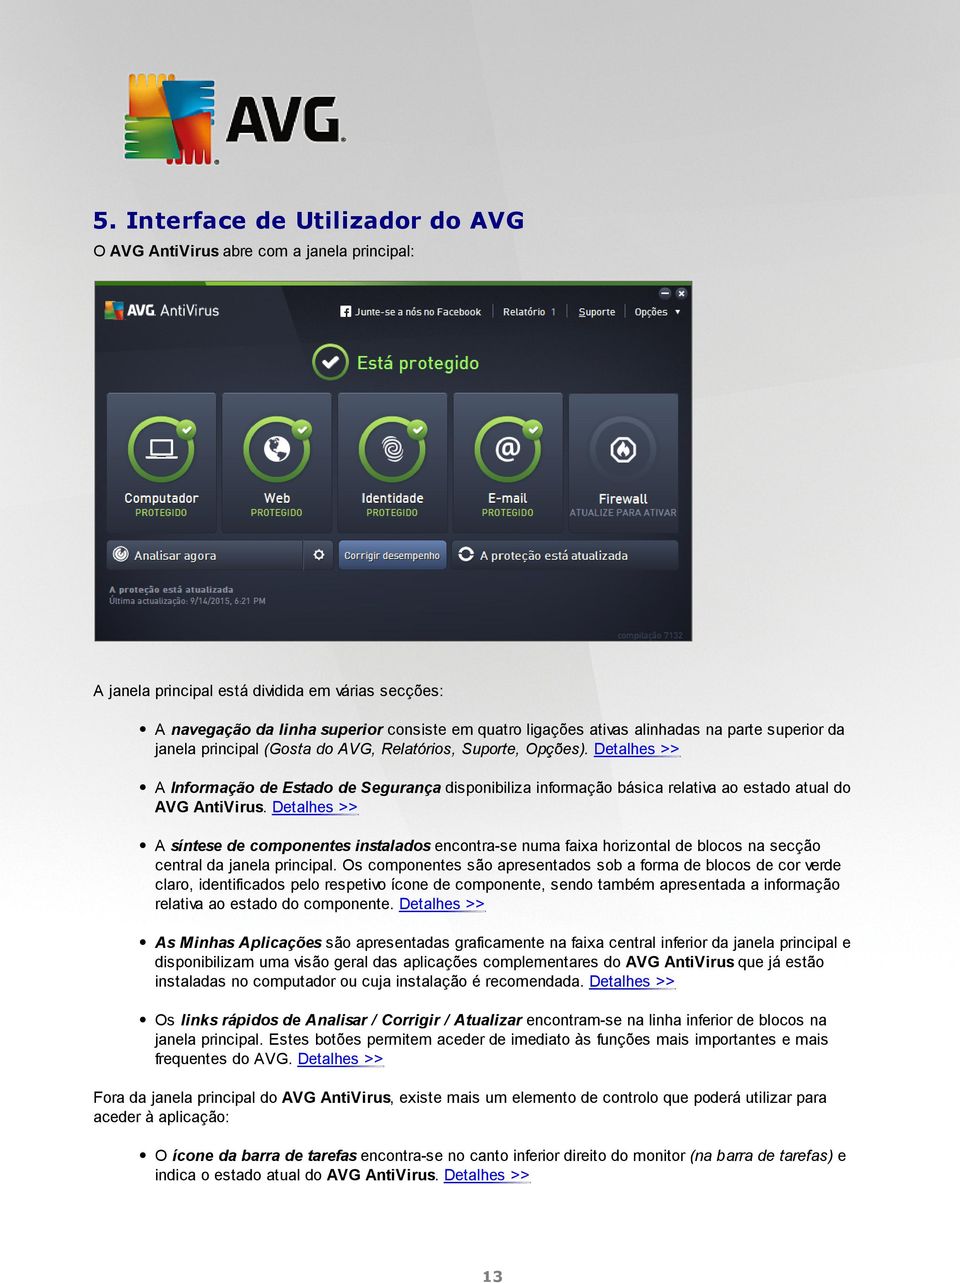 Detalhes >> A Informação de Estado de Segurança disponibiliza informação básica relativa ao estado atual do AVG AntiVirus.